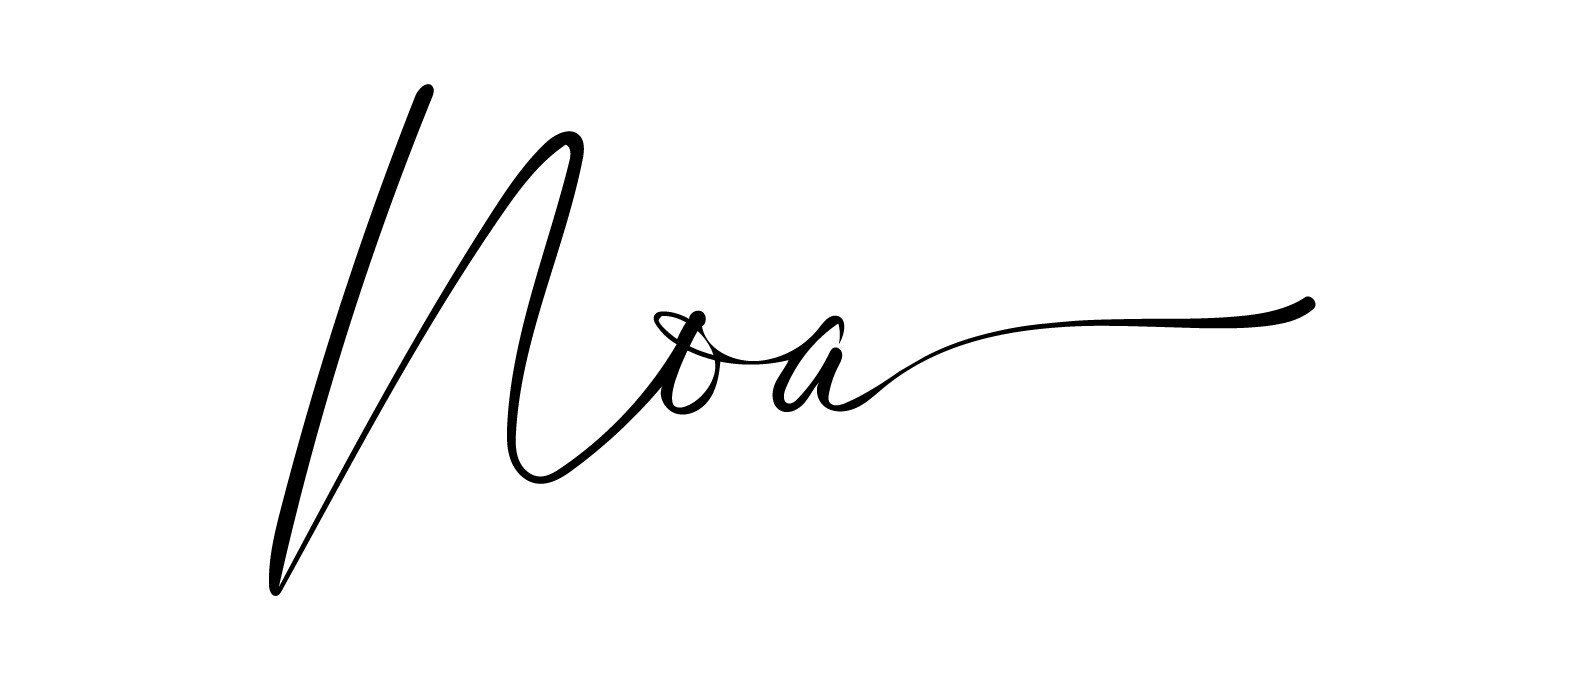 לוגו נועה מעצבת גרפית